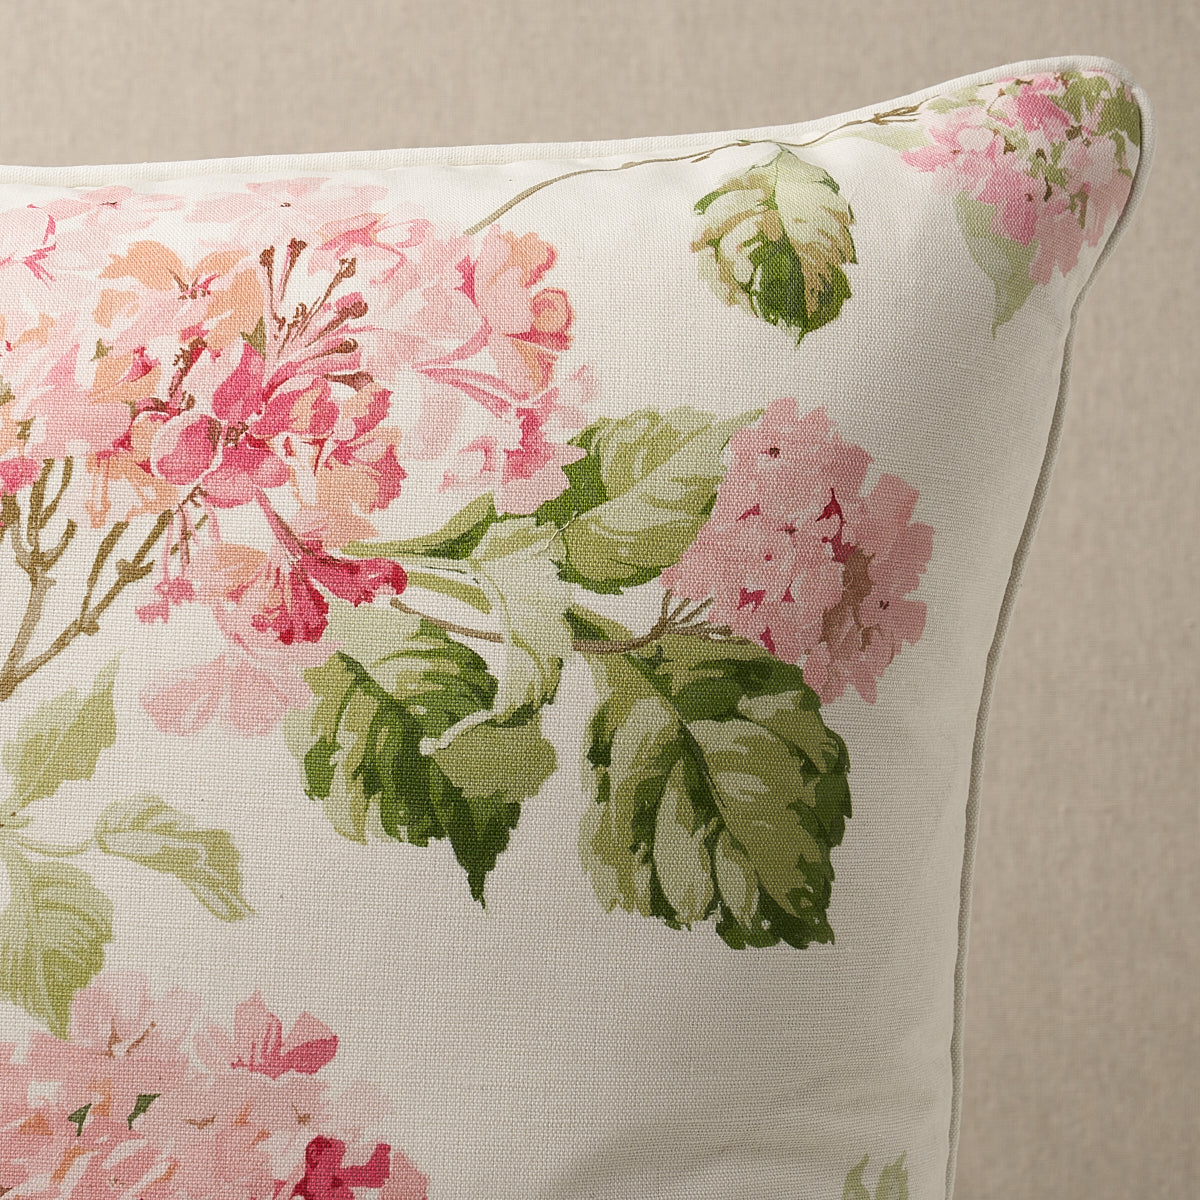 Summer Hydrangea Pillow | Blush